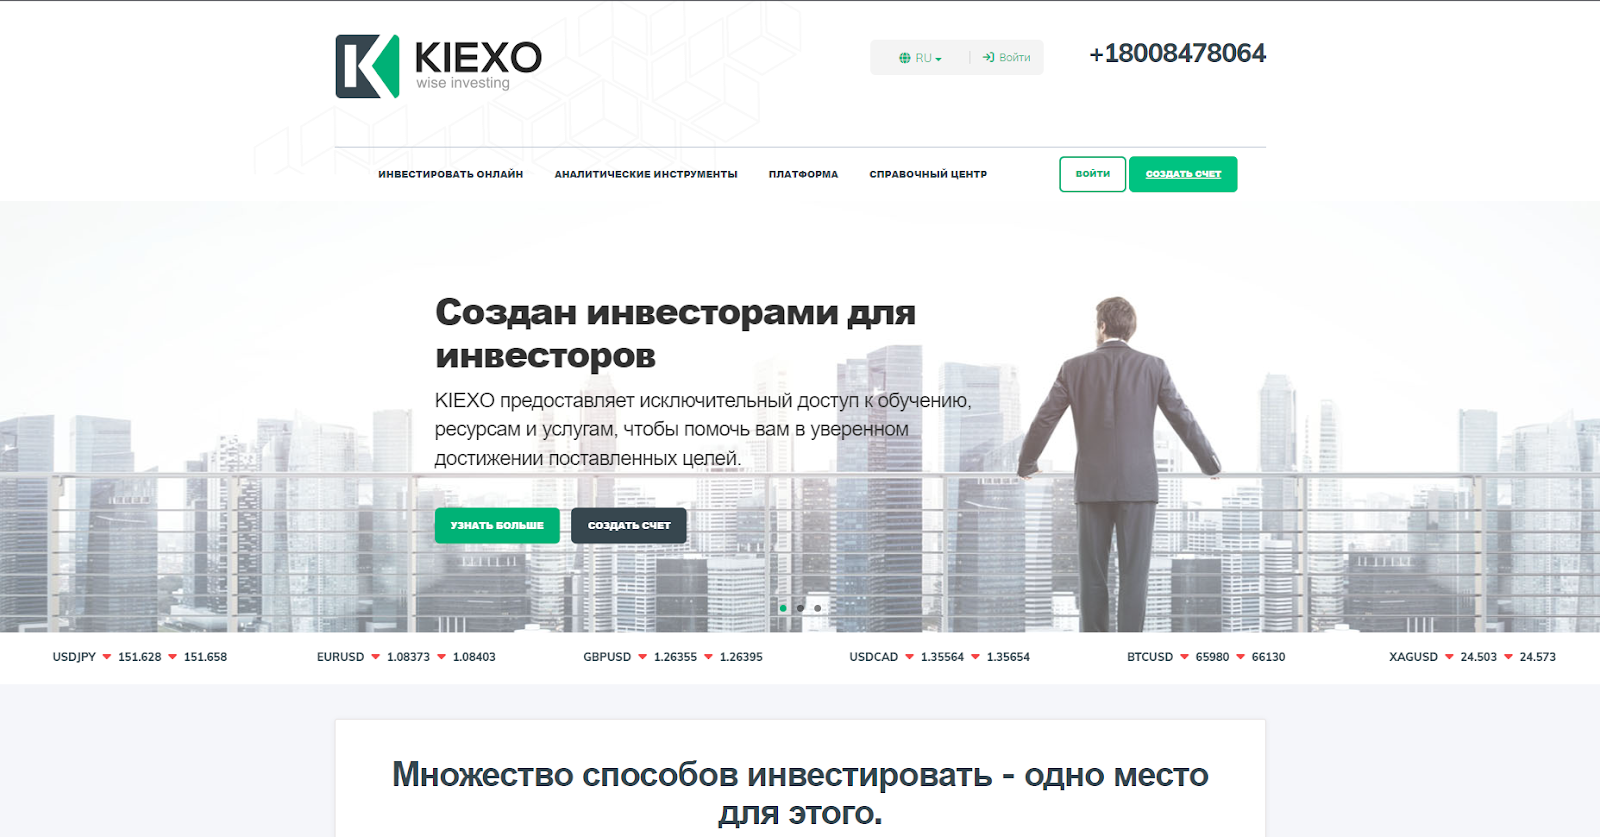 Kiexo - сайт